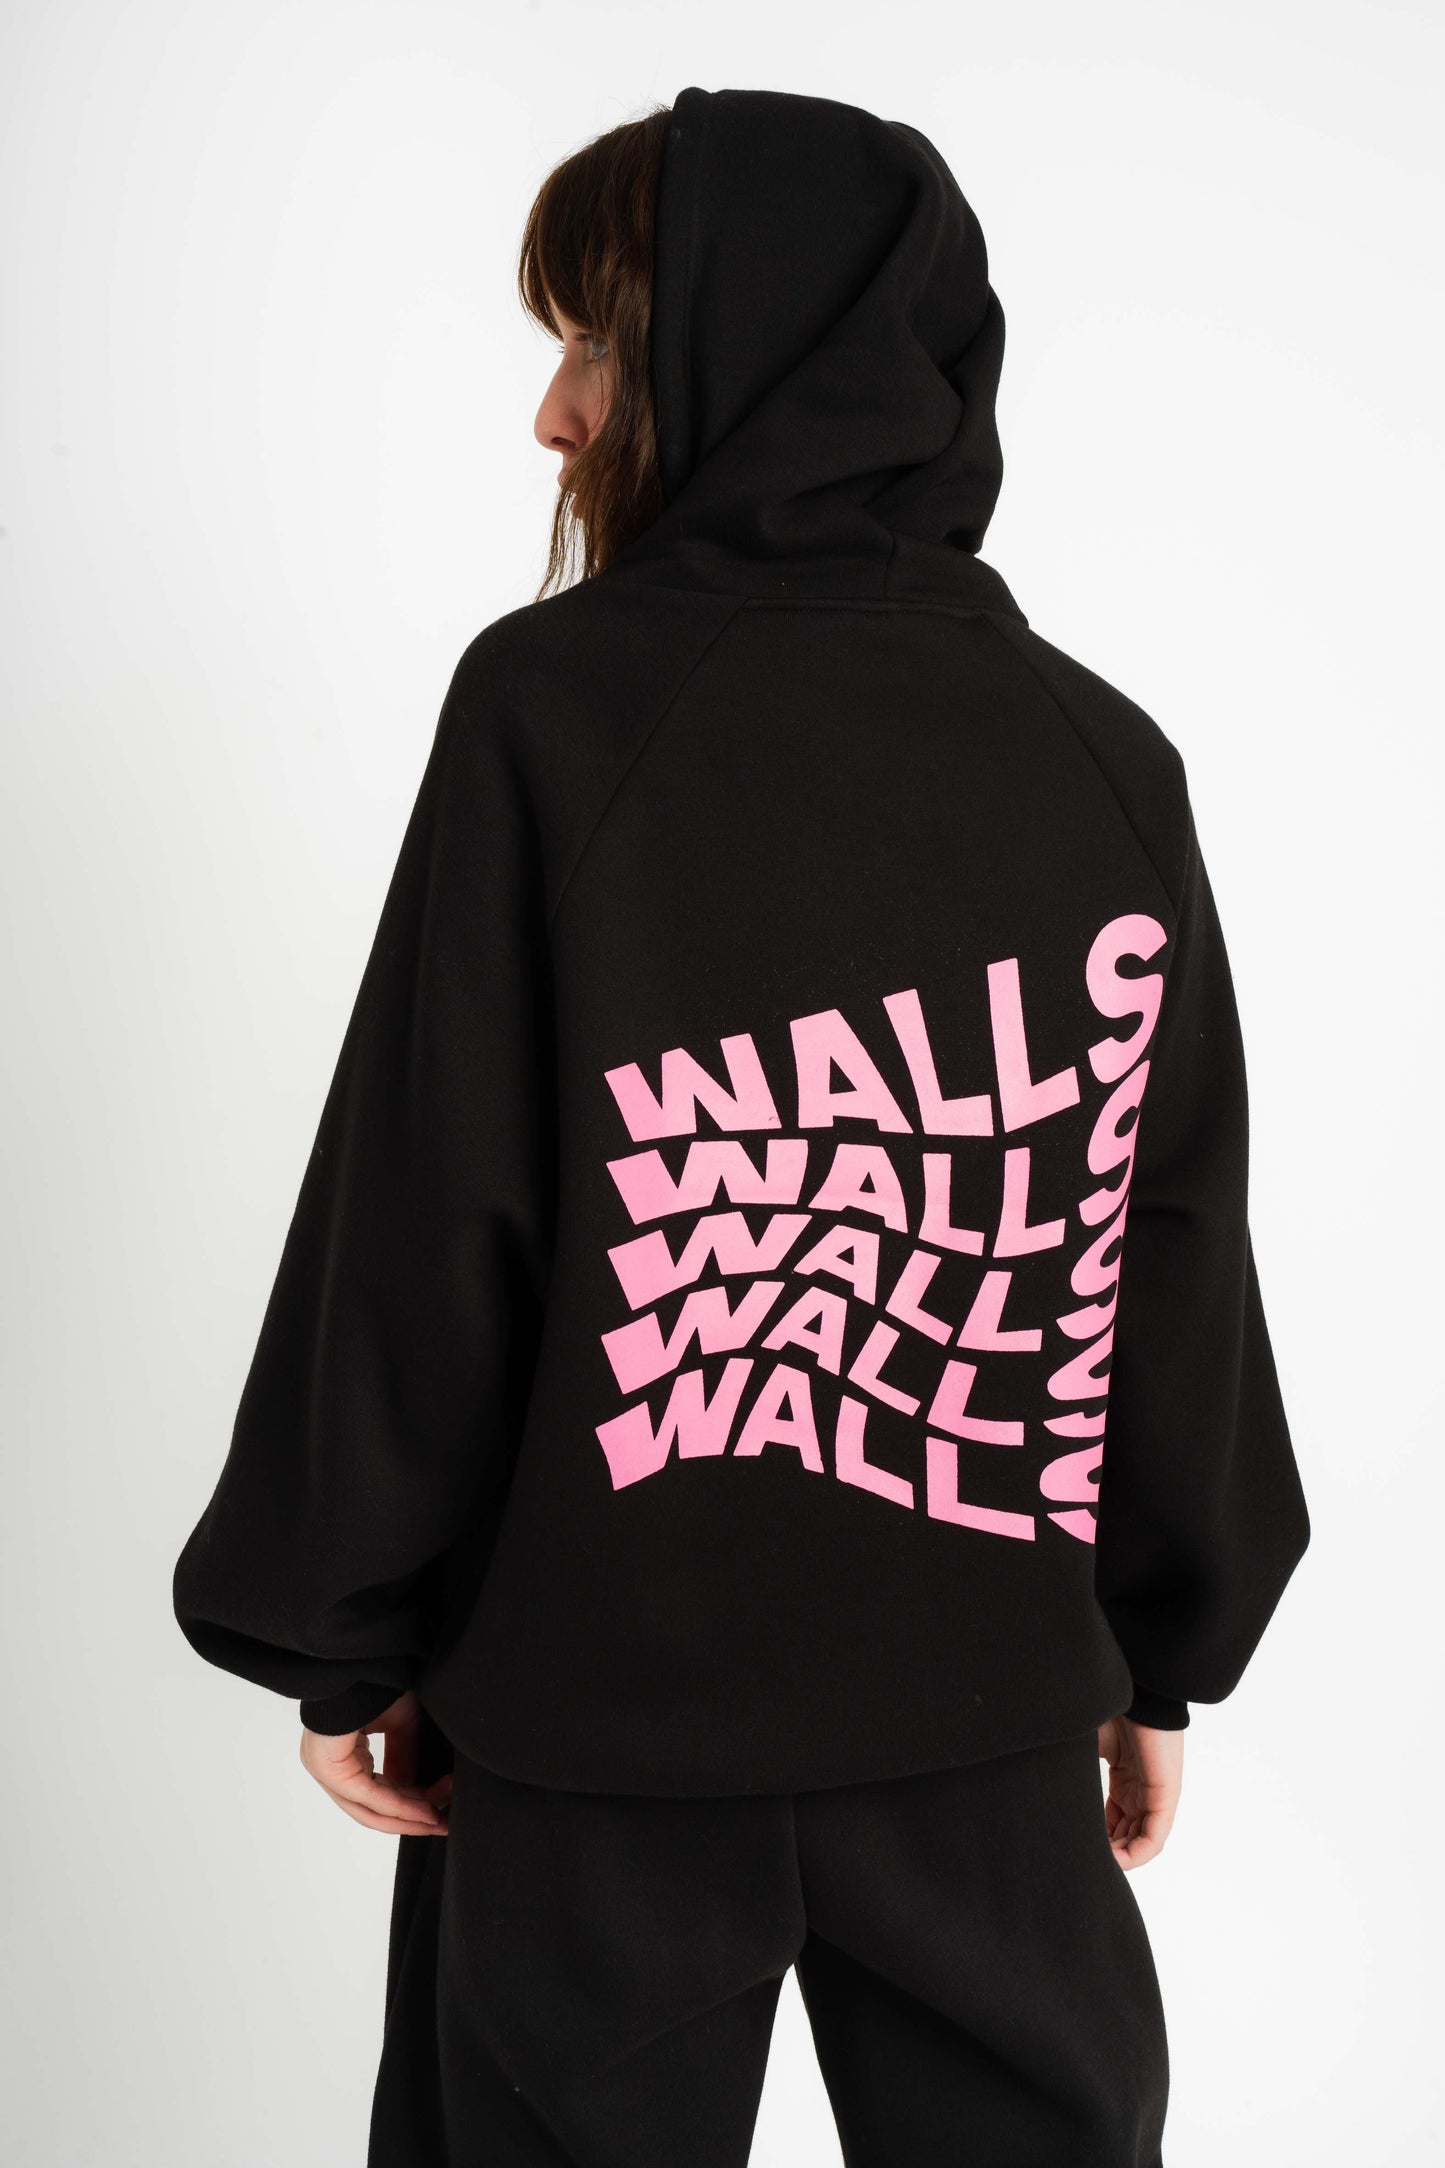 Walls Slogan Sweatshirt